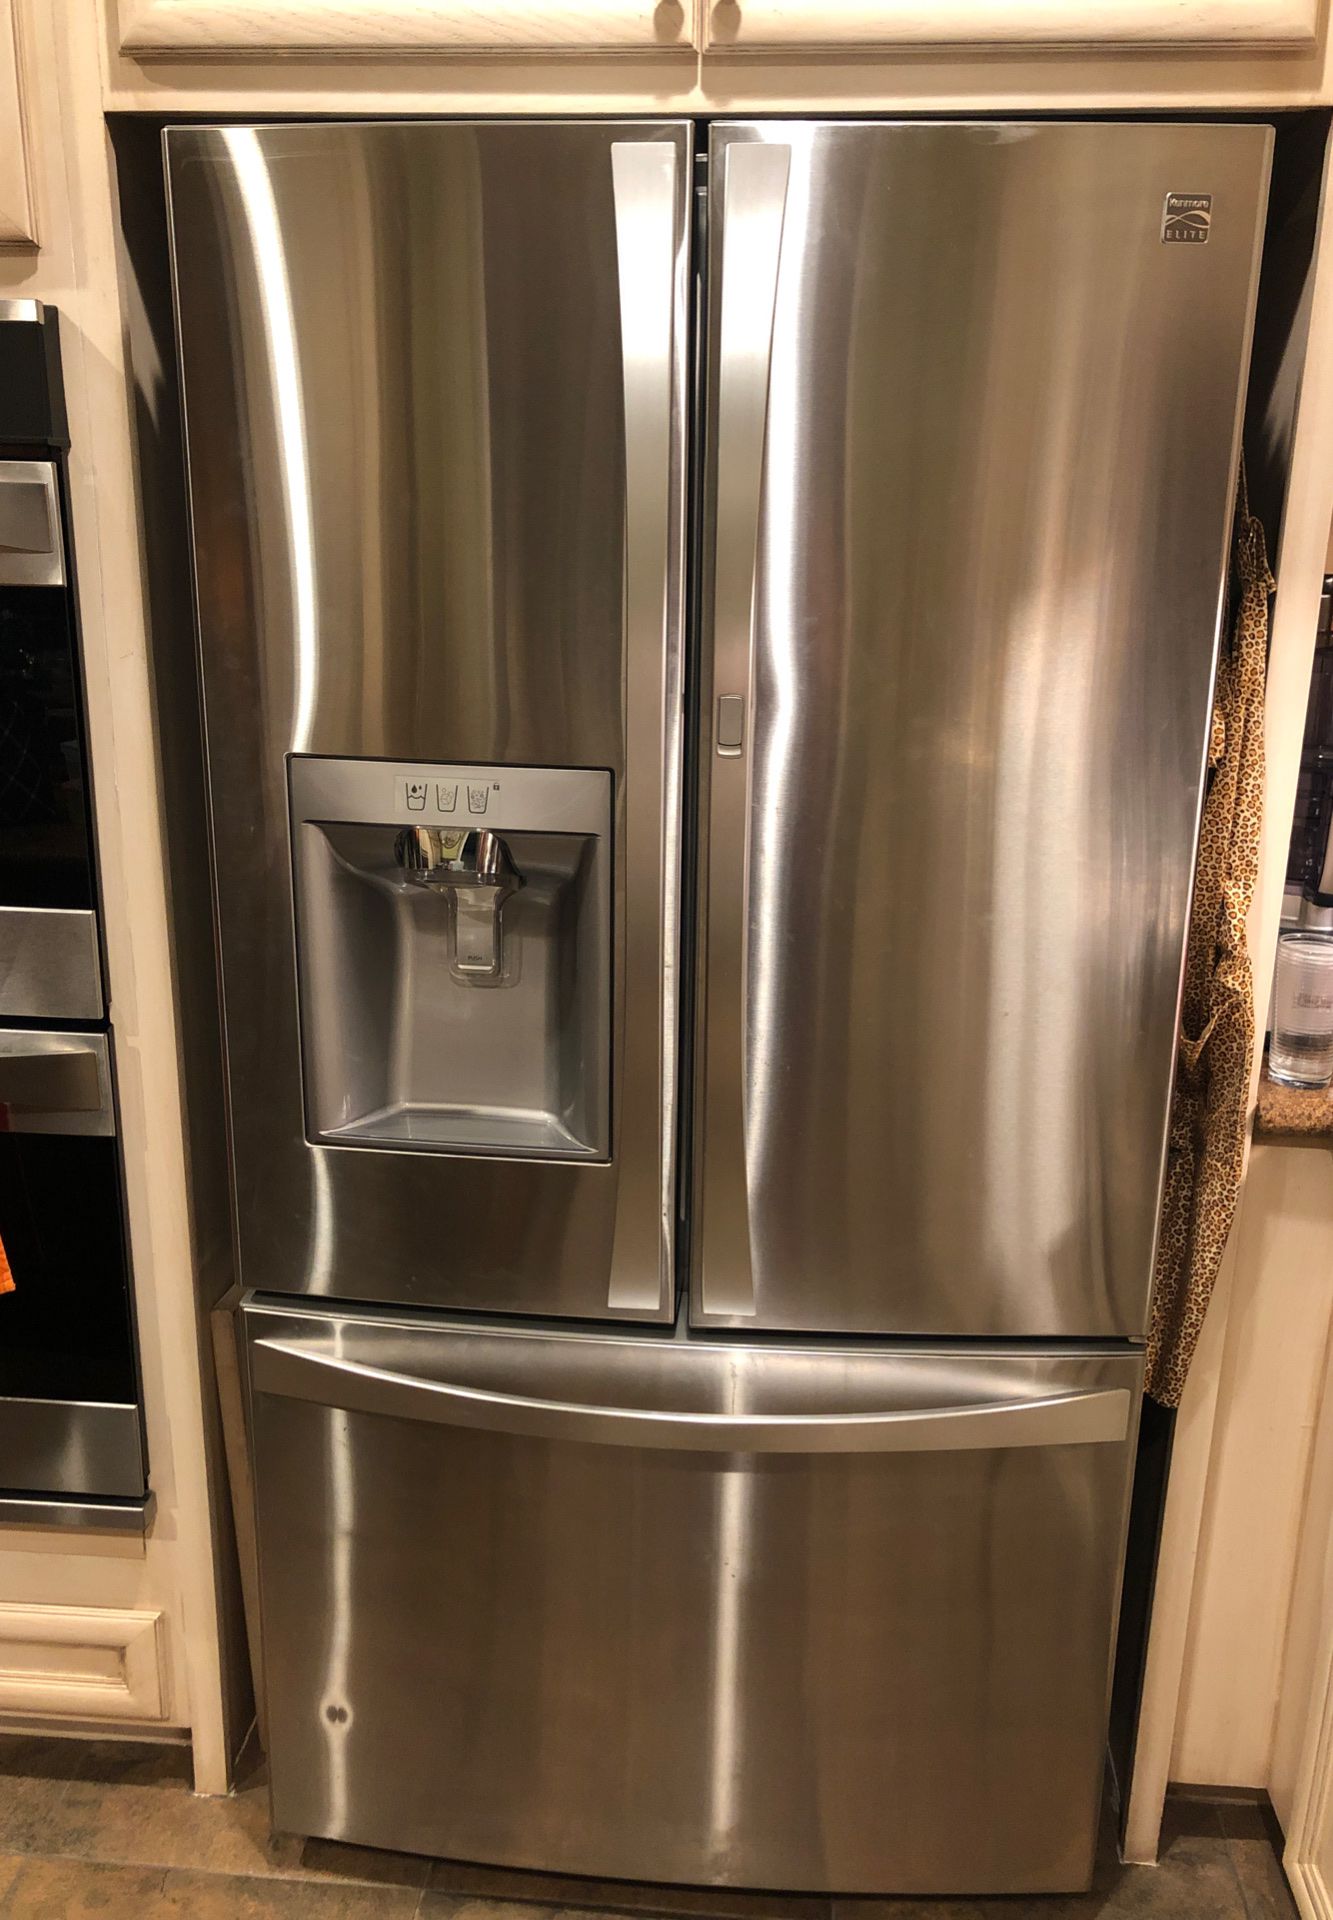 Kenmore Elite refrigerator, counter top, for parts, broken compressor 4year old